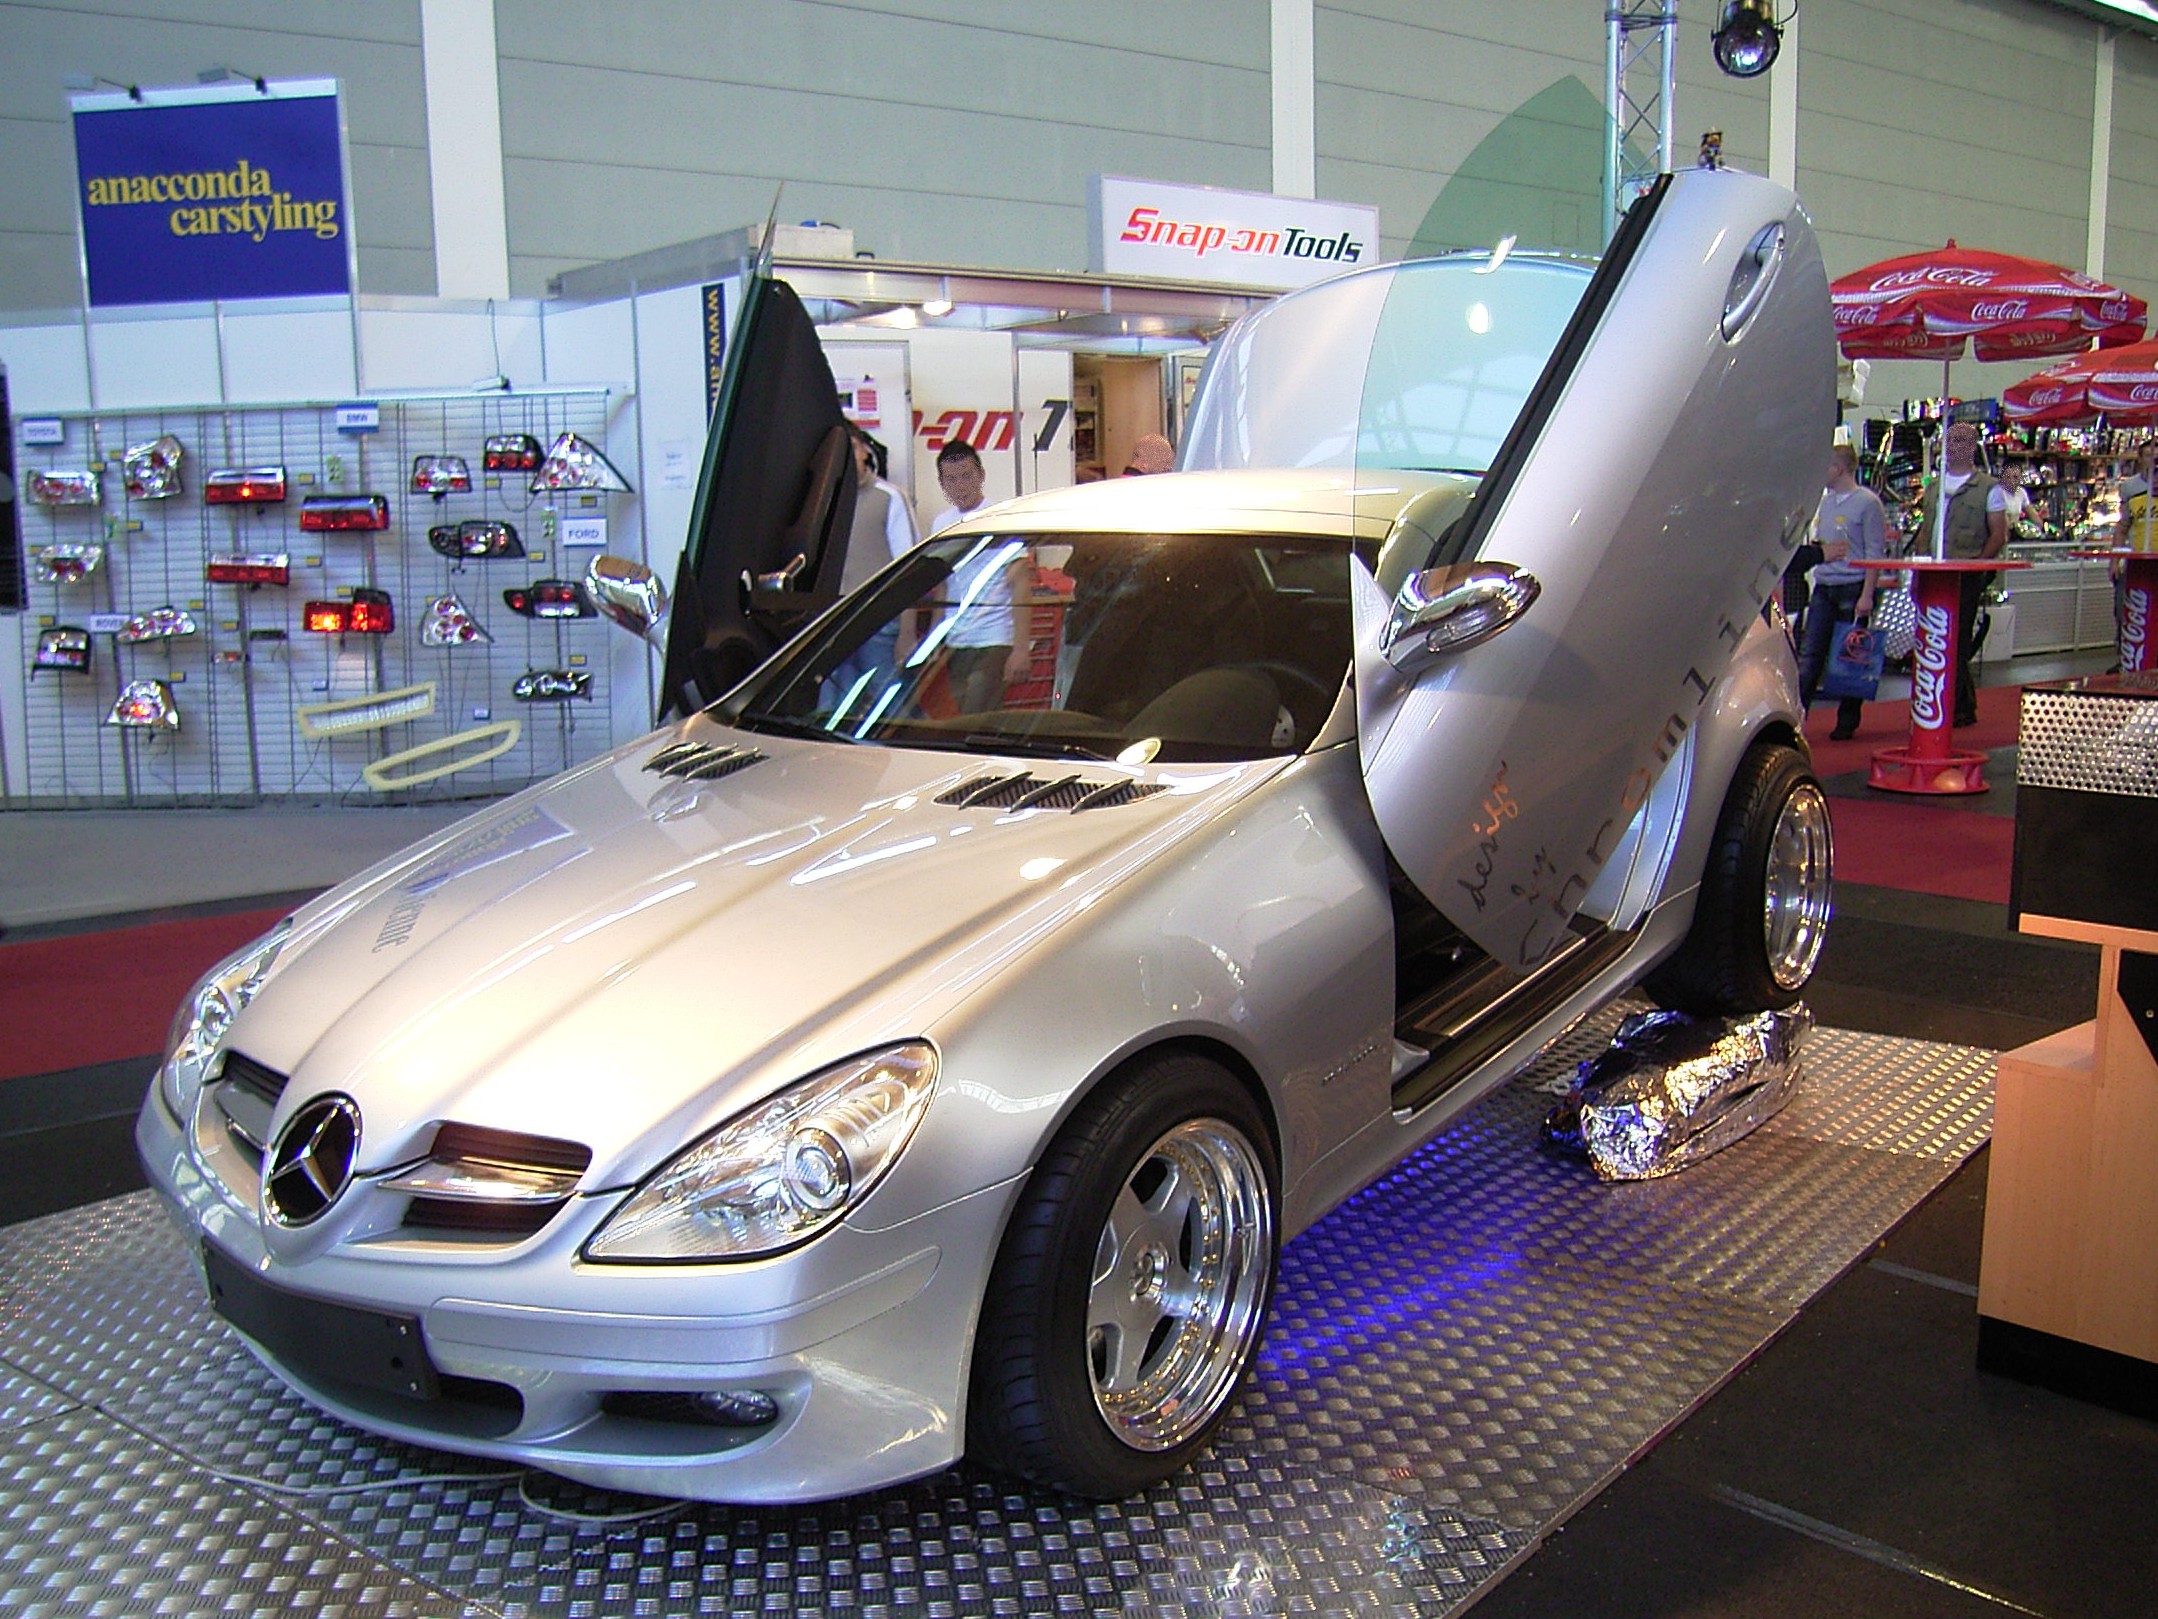 File:Mercedes SLK (R171) mit Scherentüren.jpg - Wikimedia Commons